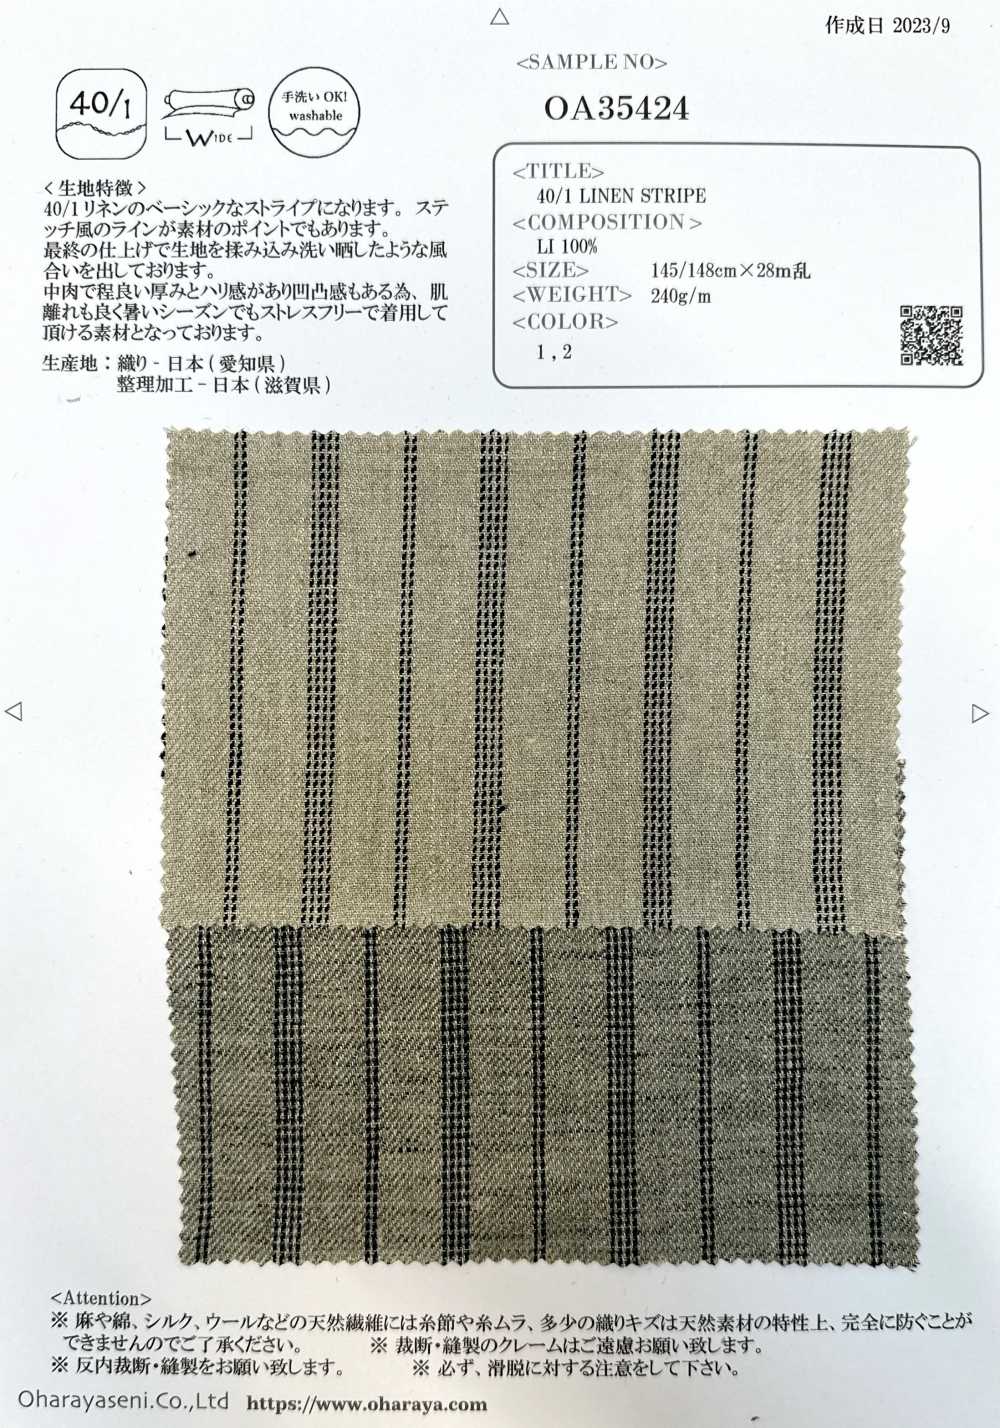 OA35424 40/1 LINEN STRIPE[Textile / Fabric] Oharayaseni